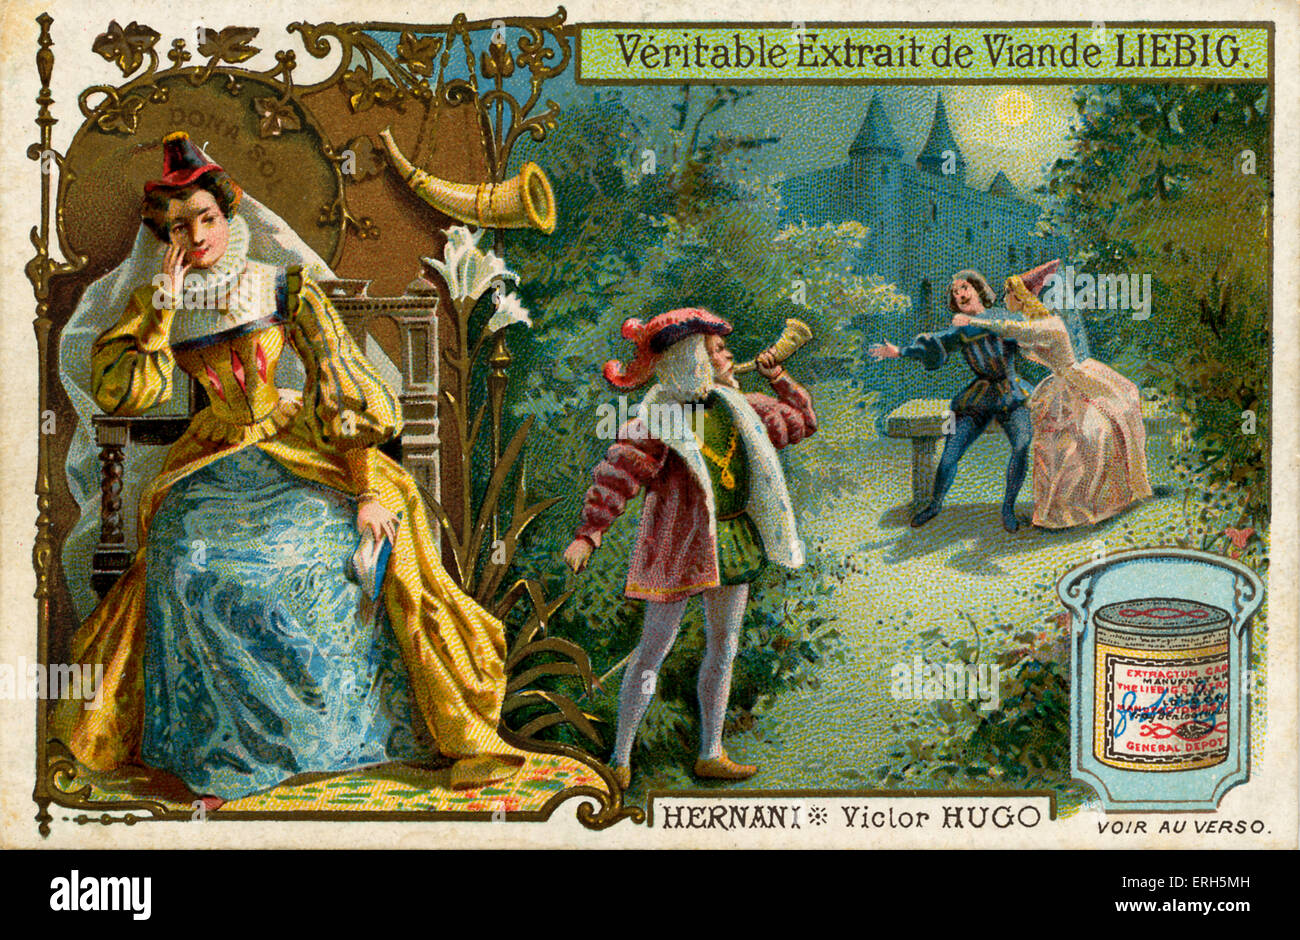 Hernani, Ou Ponsards Castillan von Victor Hugo-Illustration von Liebig Fleisch Extrakt Sammelkartenspiel. Spiel von 1830. VH: Französisch Stockfoto